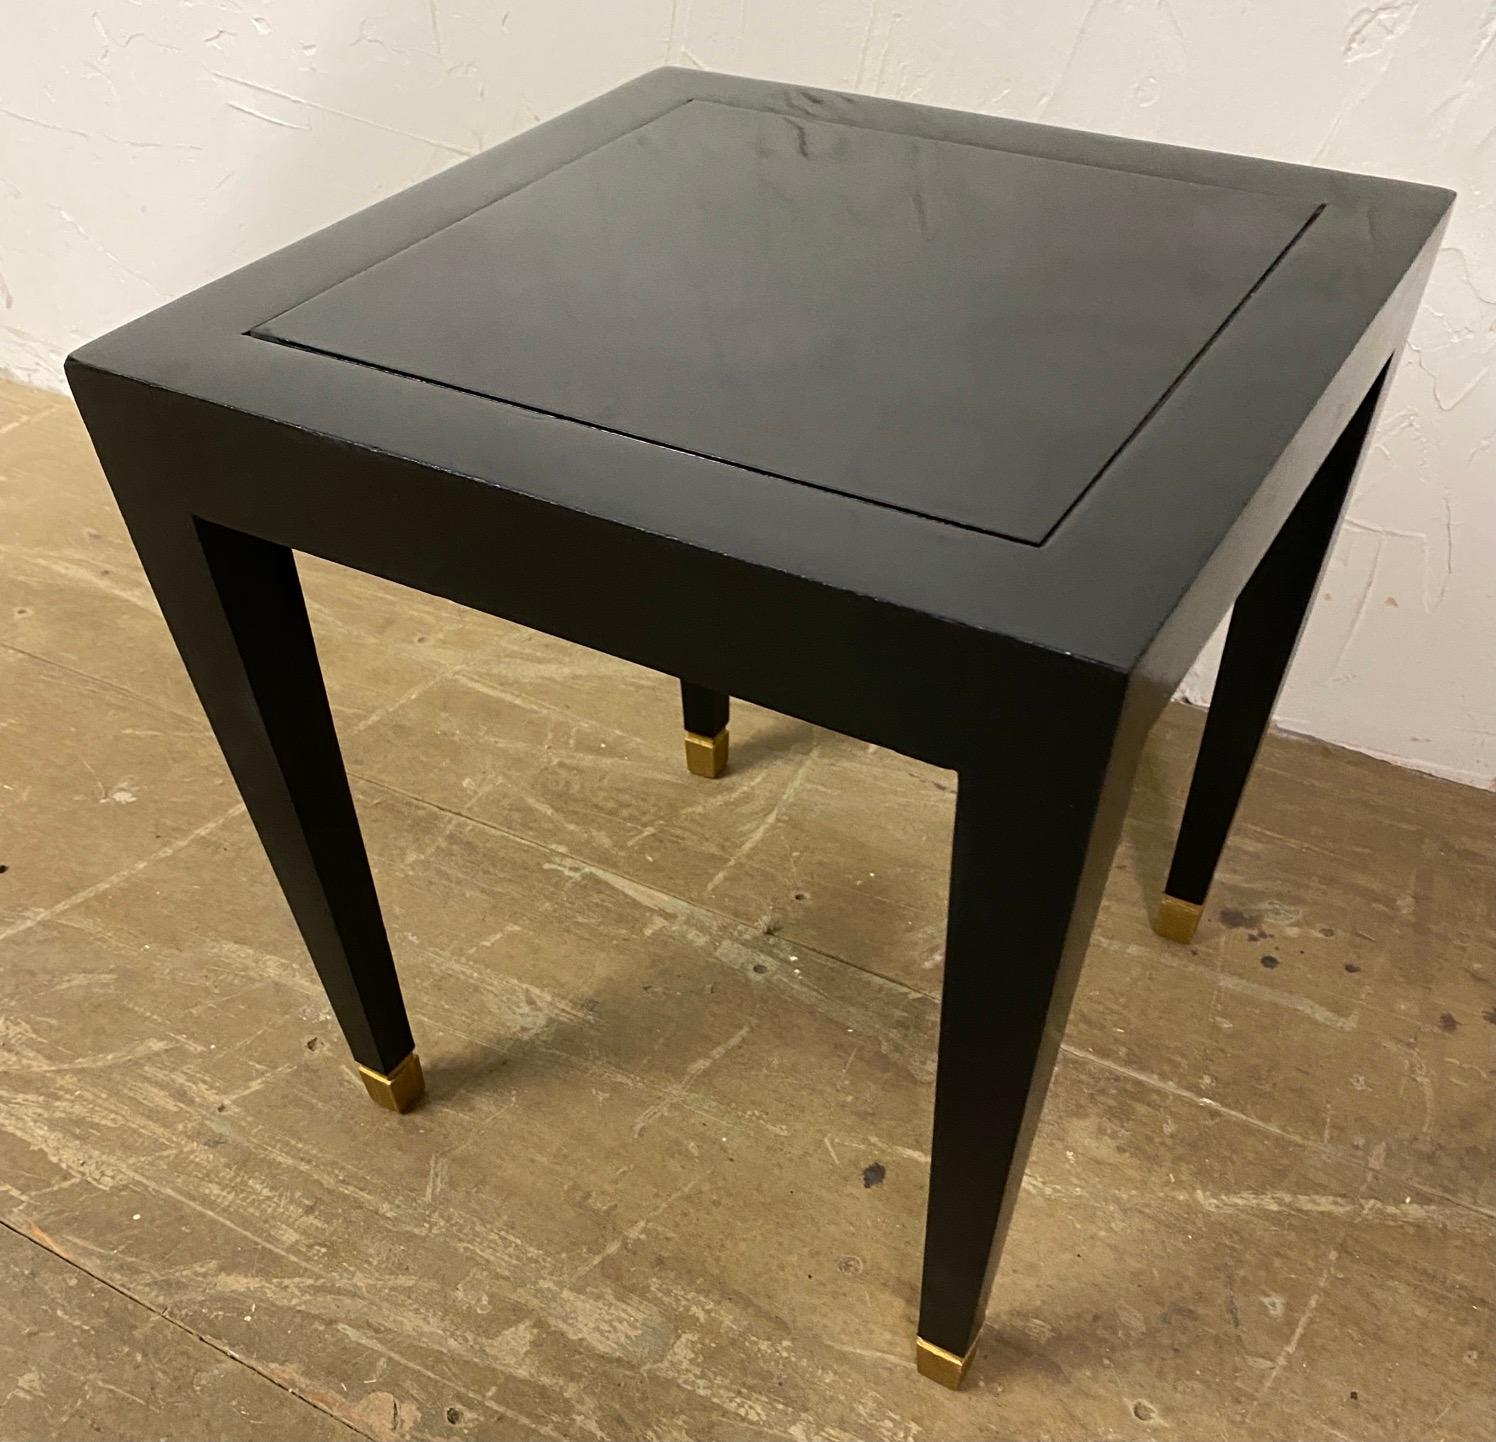 Élégante petite table d'appoint Donghia Mardrid laquée noir avec des pieds fuselés et des capuchons carrés en laiton. Cette petite table est idéale pour poser un verre à côté d'une chaise ou d'un canapé. La table peut être déplacée facilement pour